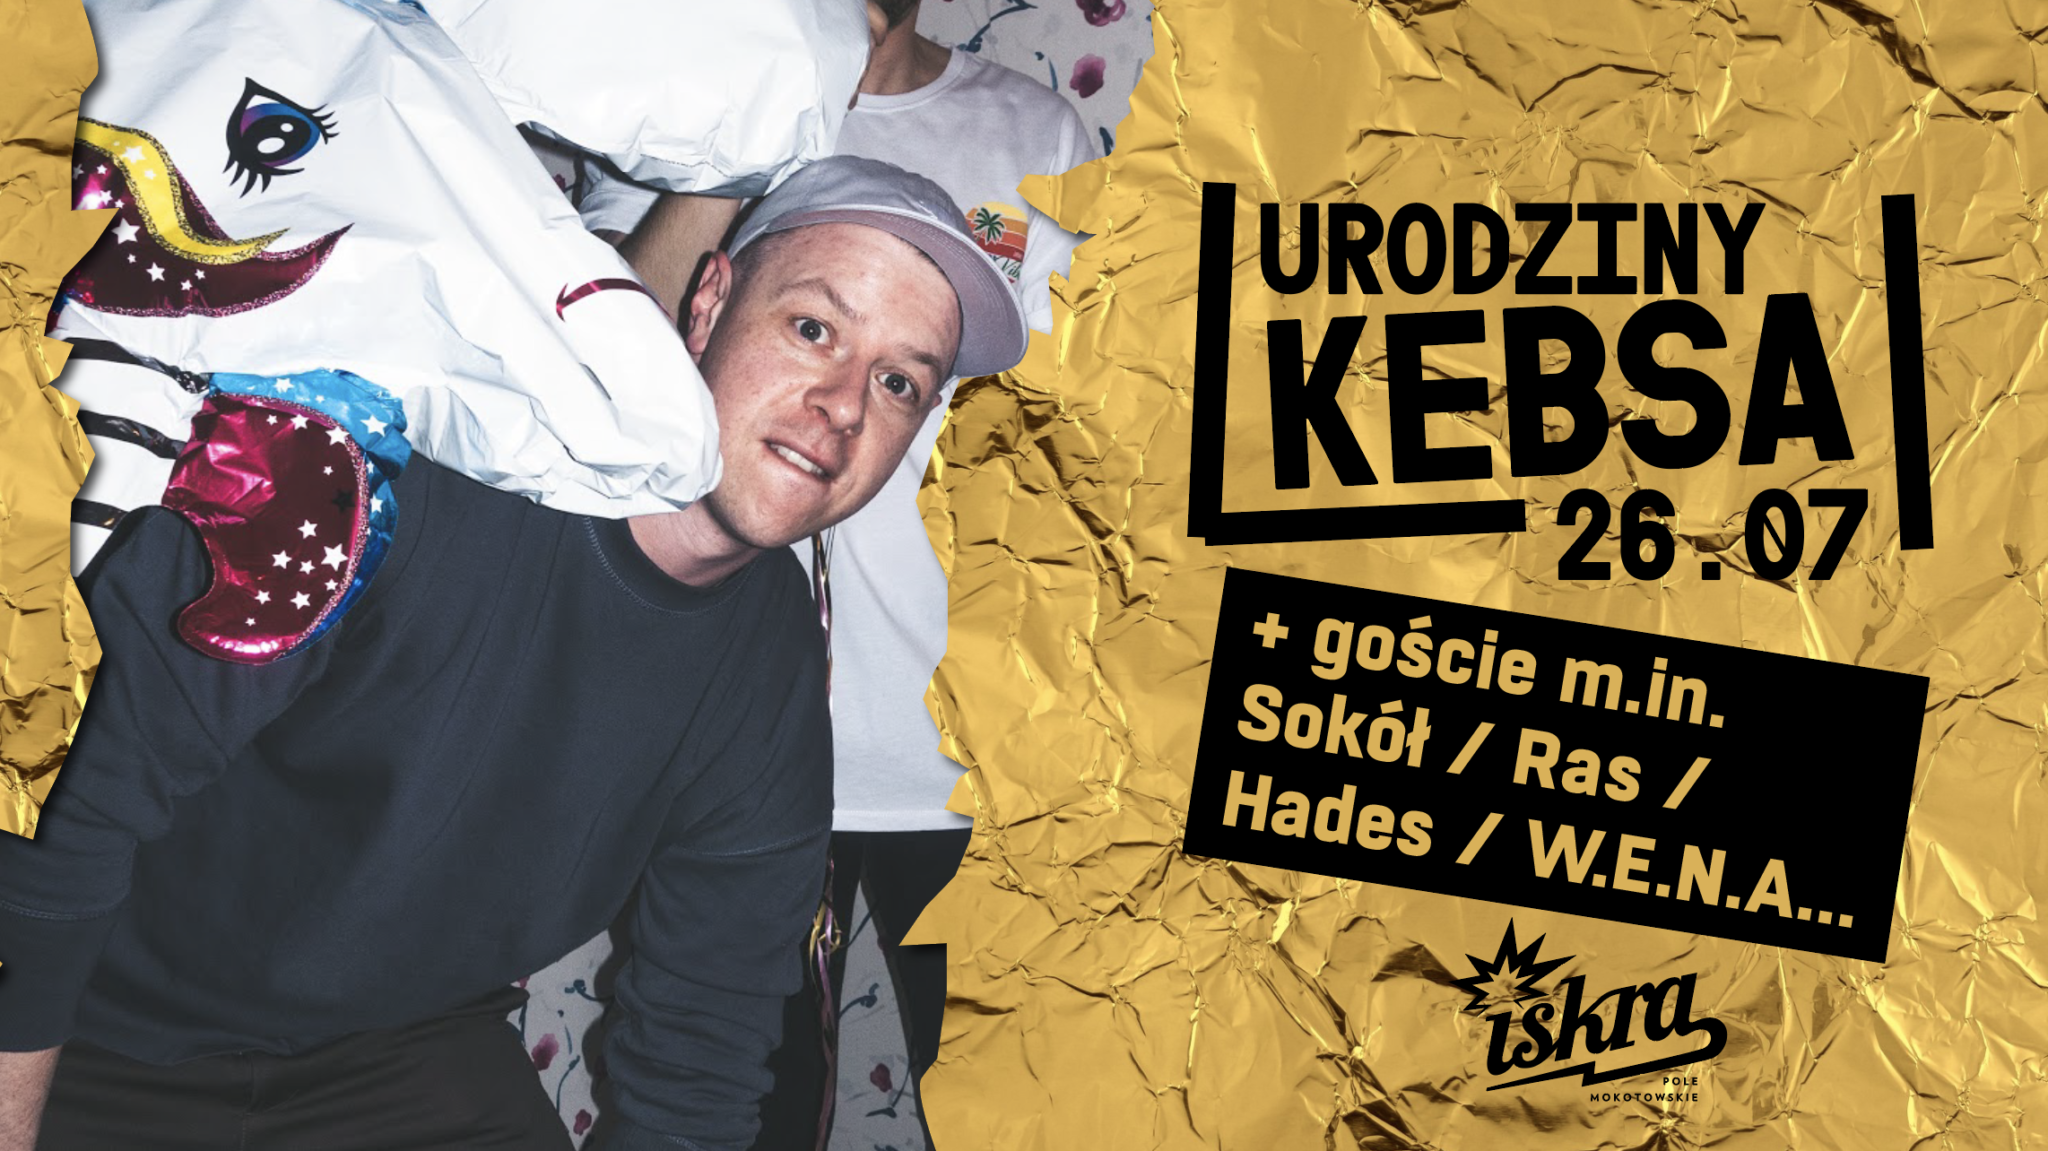 Screenshot 2019 07 23 at 09.32.12 Już w piątek urodziny DJa Kebsa w Iskrze. Na imprezie zagrają Sokół, Ras, Hades i W.E.N.A.